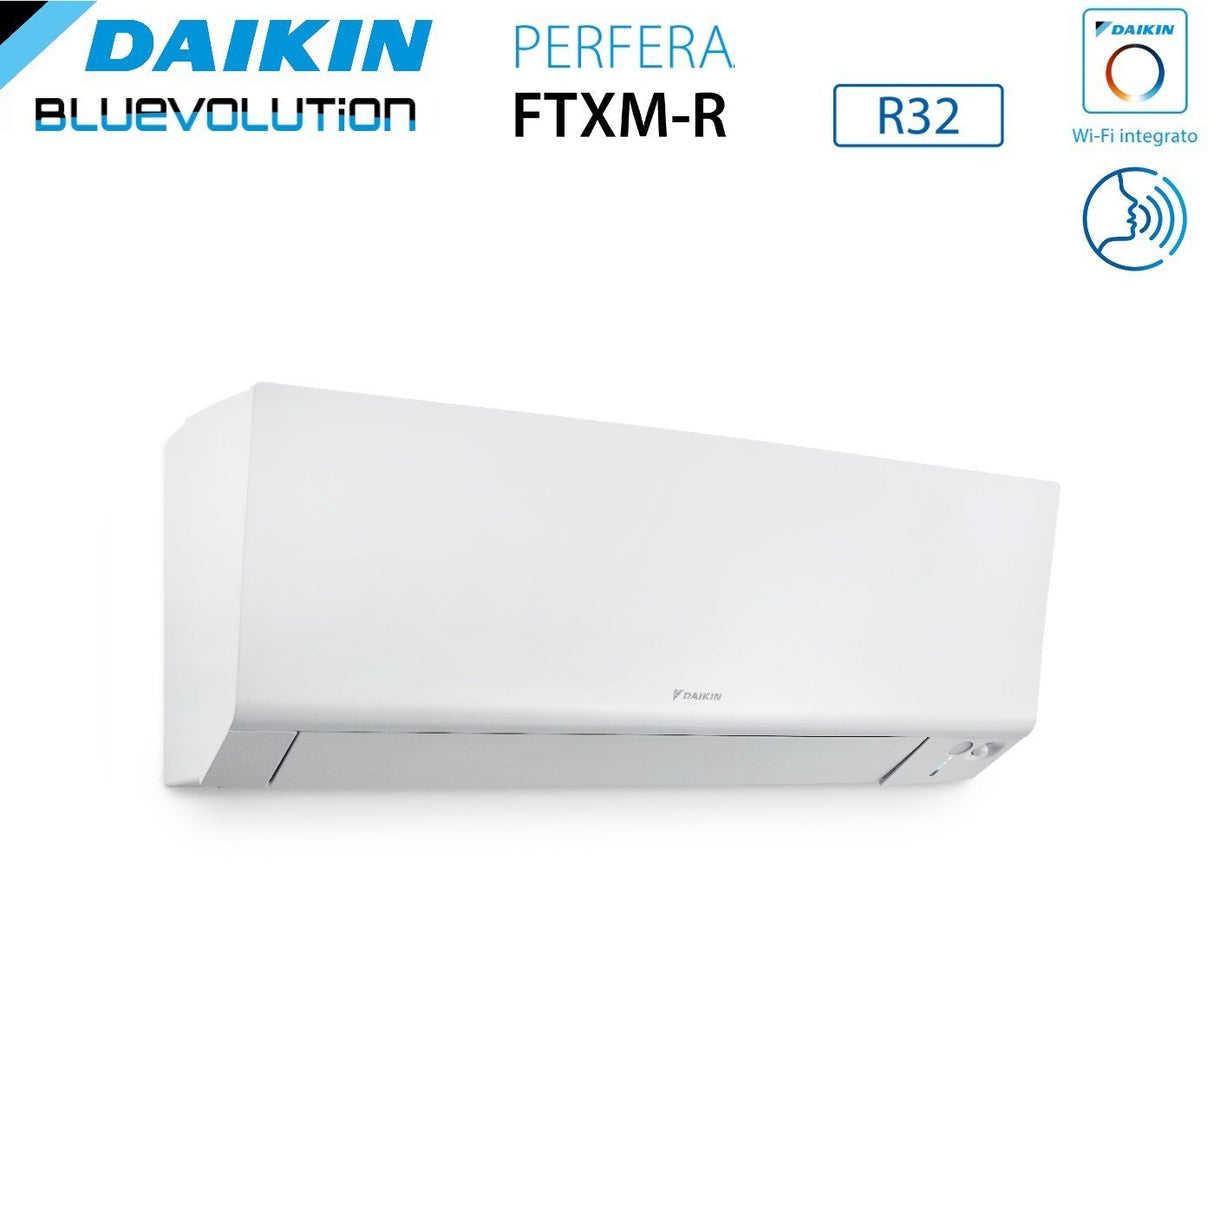 immagine-4-daikin-climatizzatore-condizionatore-daikin-bluevolution-quadri-split-inverter-serie-ftxmr-perfera-wall-791515-con-4mxm80a-r-32-wi-fi-integrato-700090001500015000-garanzia-italiana